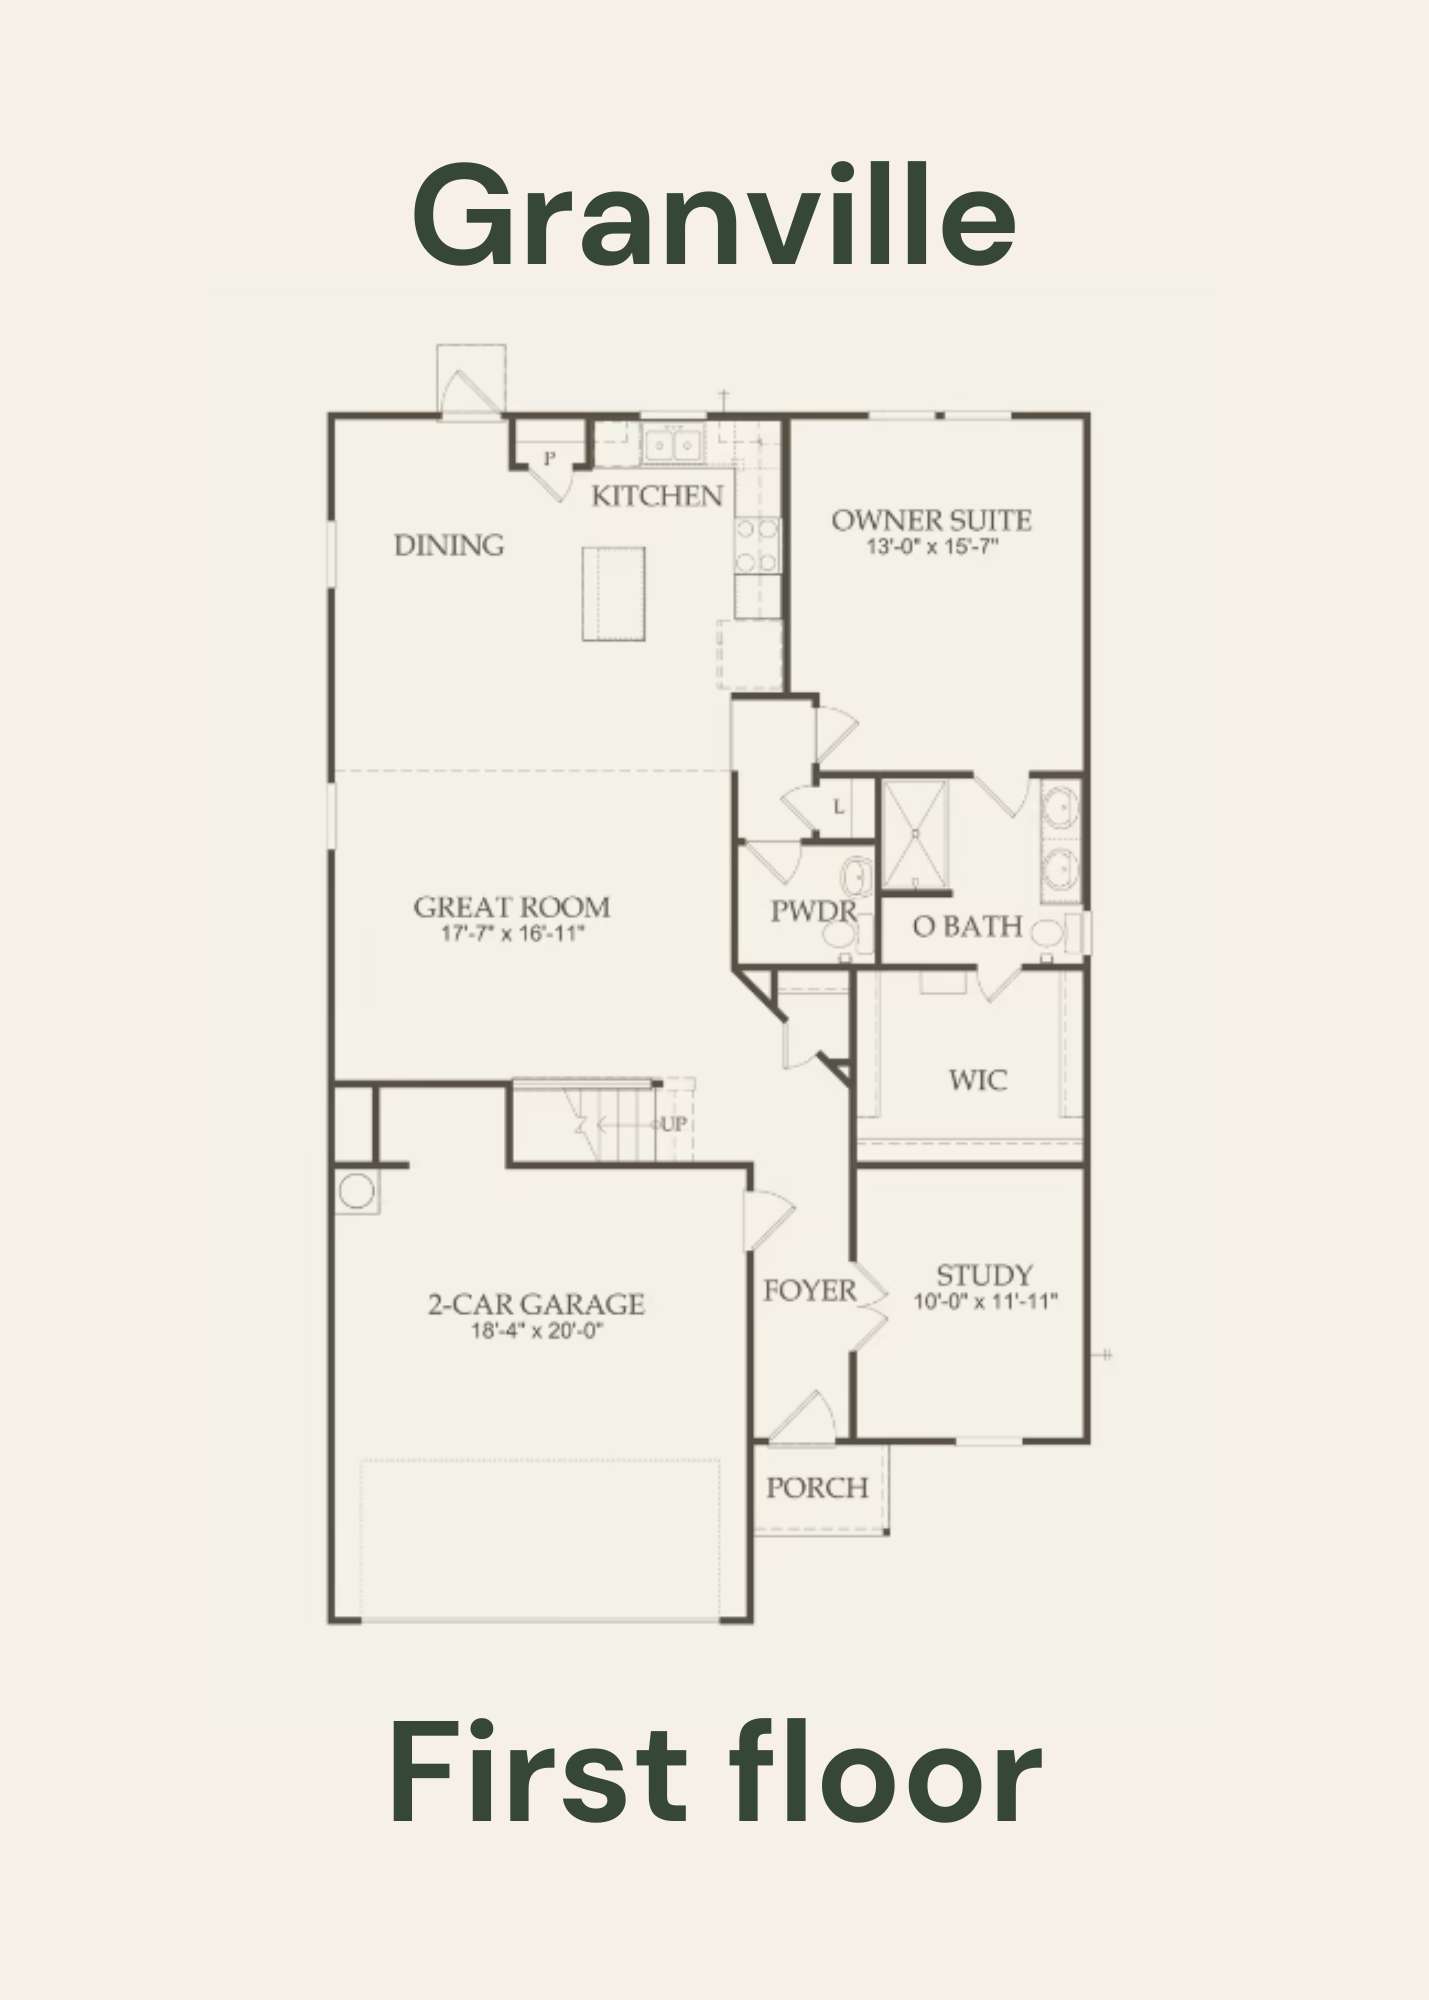 Granville First Floor - Floor Plan by Centex Homes